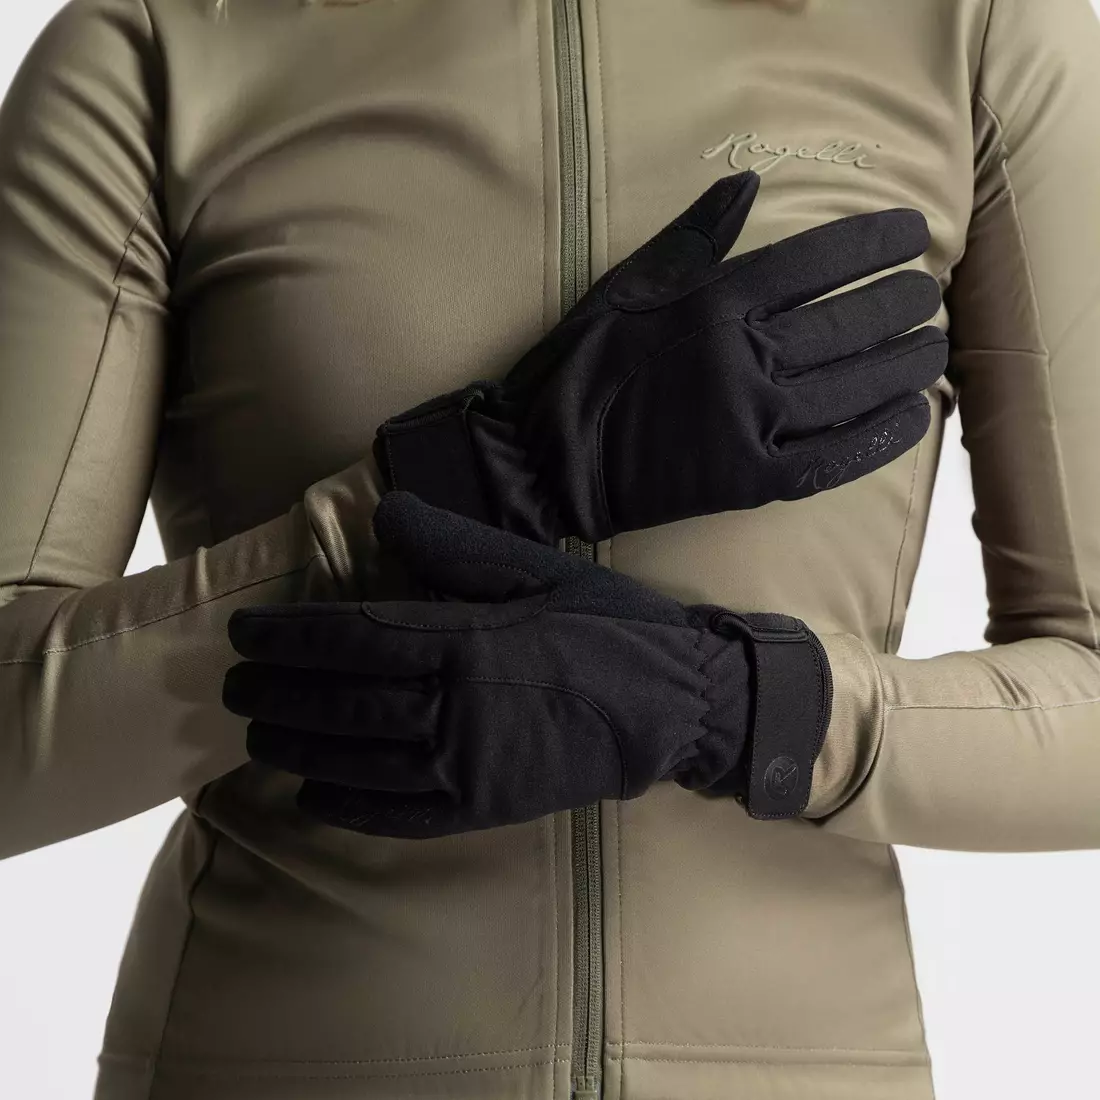 Mănuși de ciclism de iarnă pentru femei Rogelli CORE II, negre